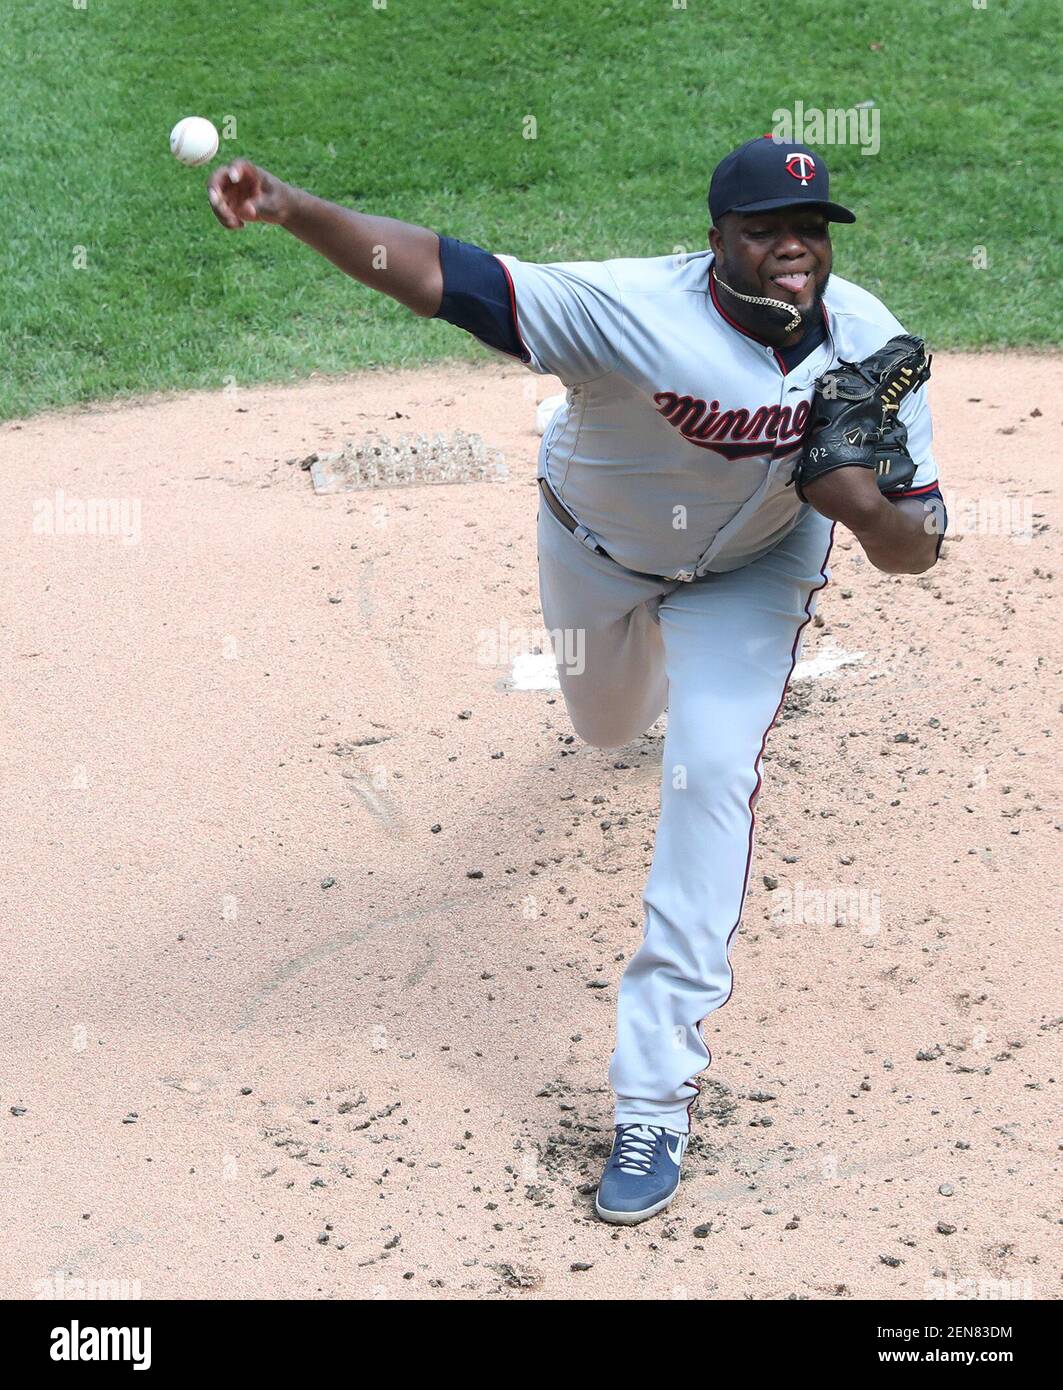 Il lanciatore Michael Pineda dei Minnesota Twins lancia contro i Chicago White Sox nel primo inning al campo Guaranteed Rate di Chicago sabato 29 giugno 2019. (Foto di John J. Kim/Chicago Tribune/TNS/Sipa USA) Foto Stock